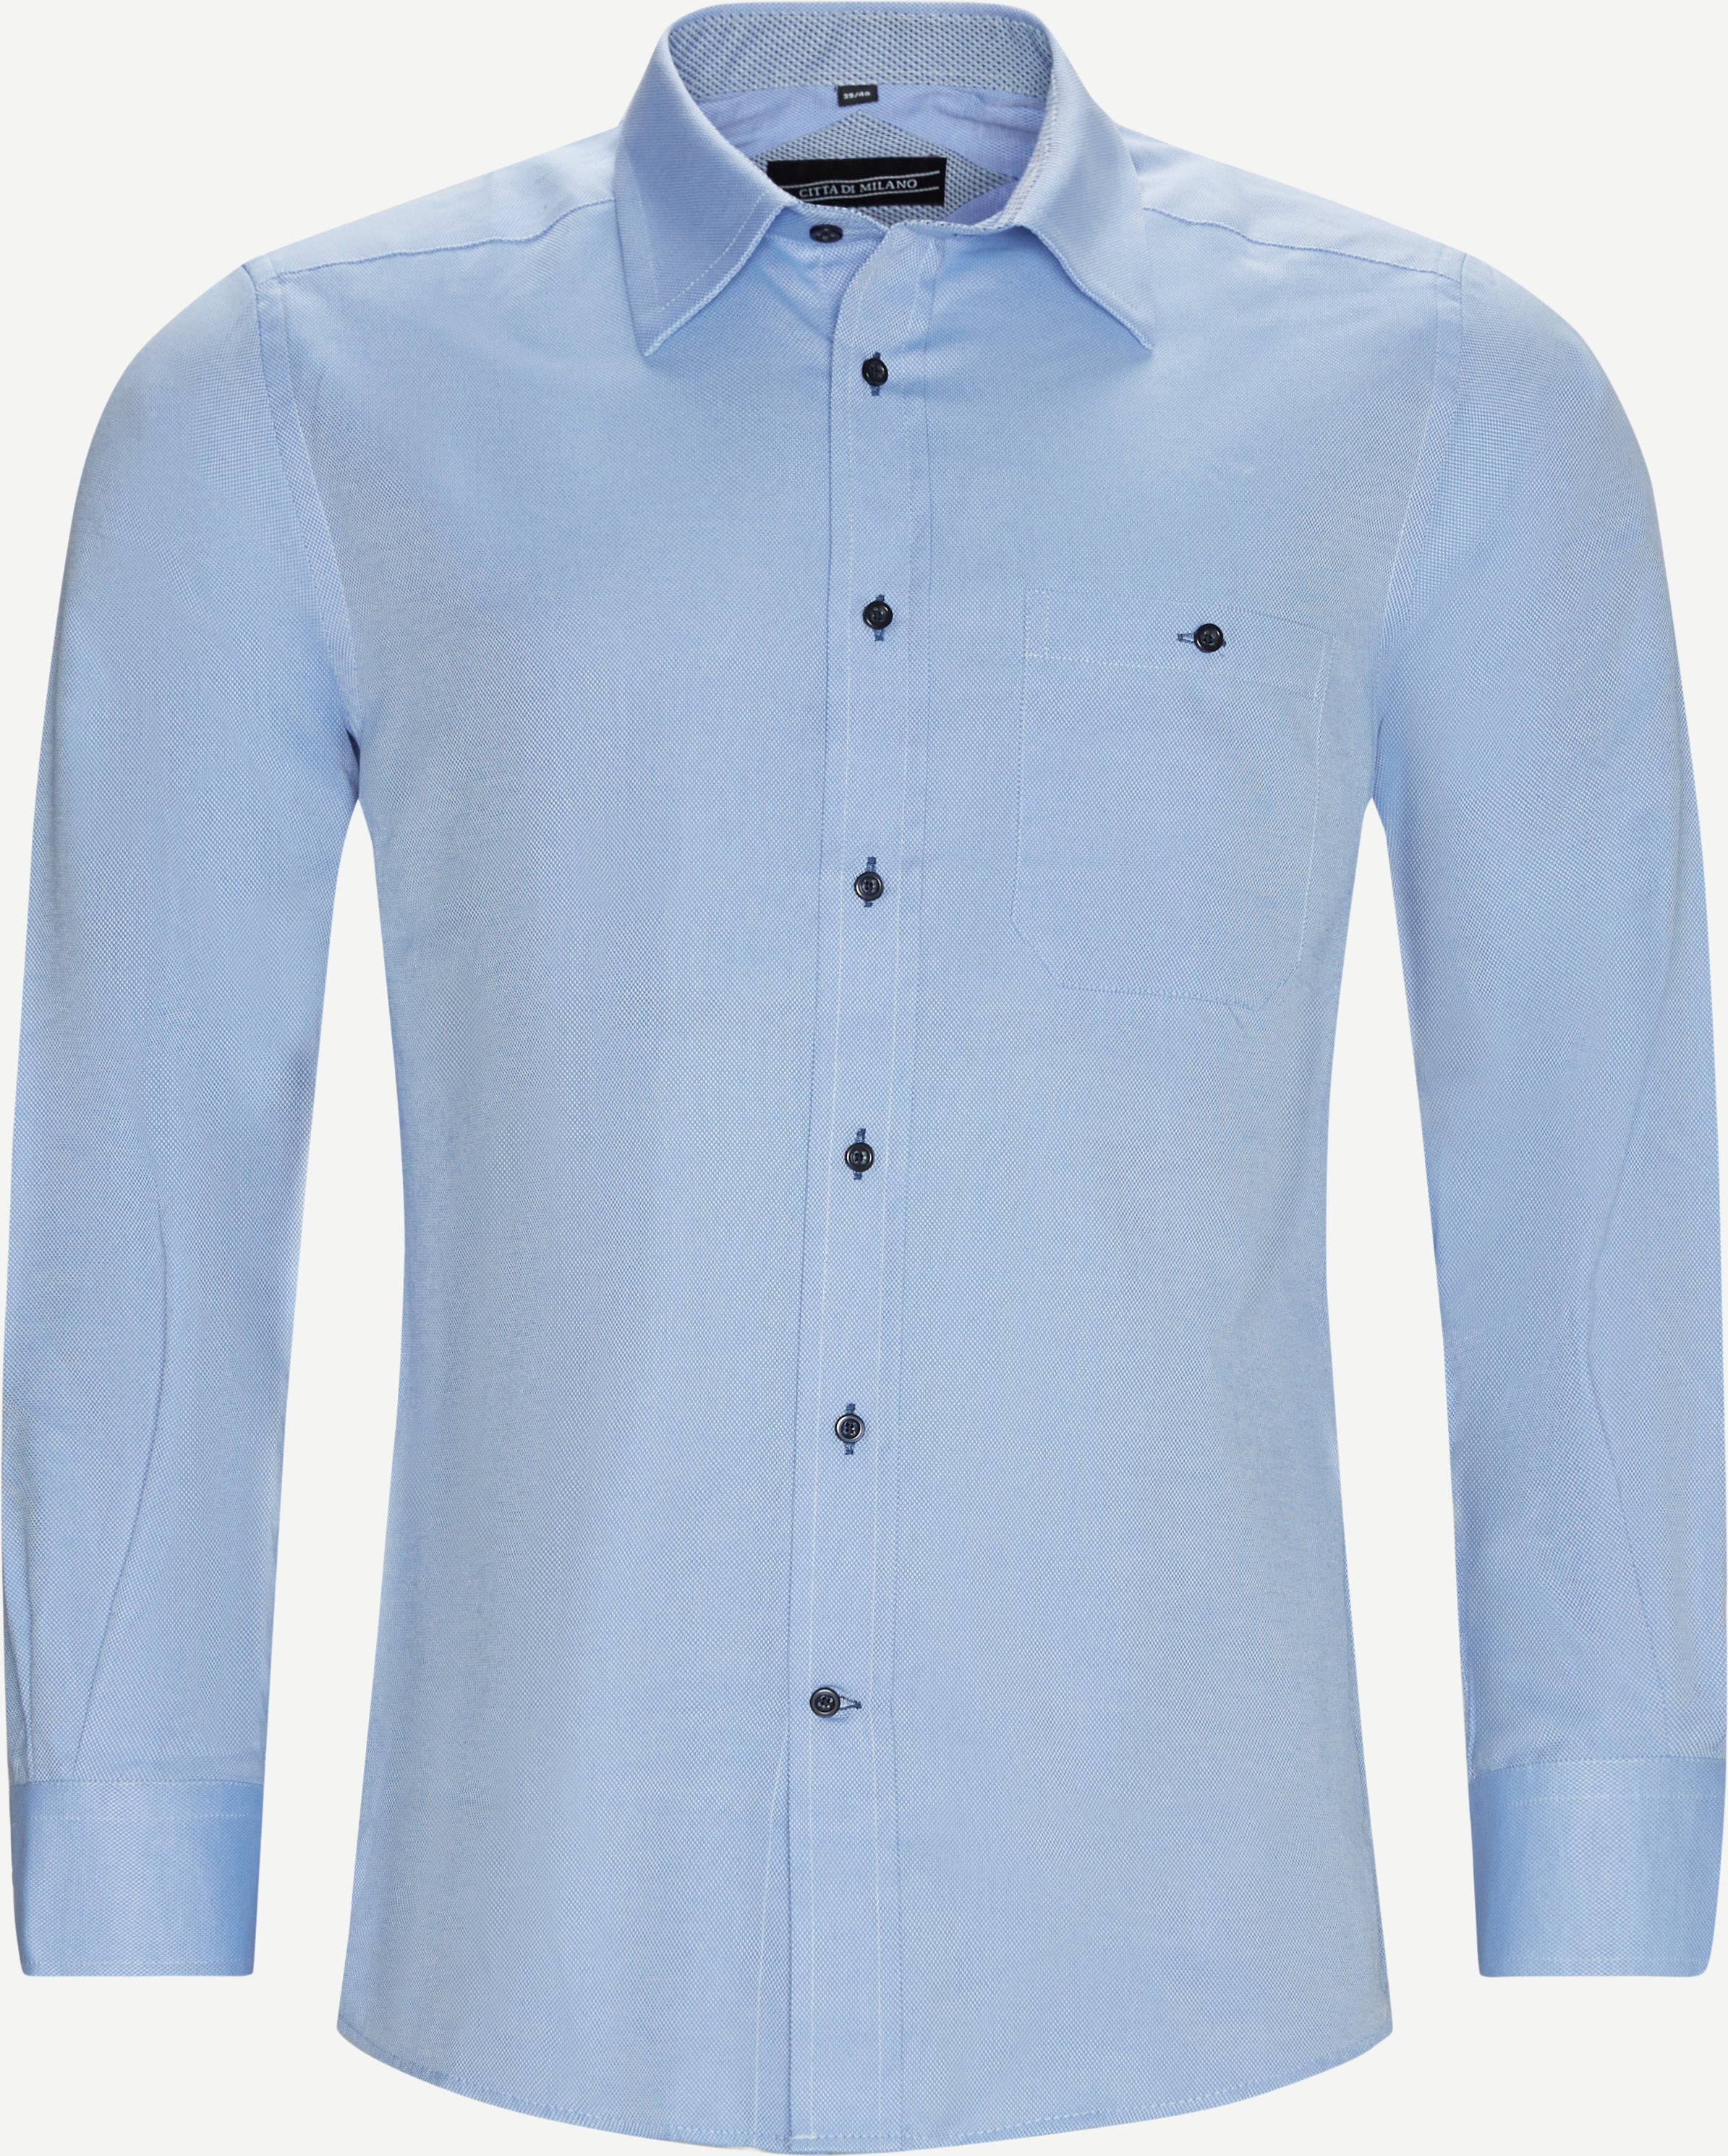 Karlsruhe Shirt - Shirts - Regular fit - Blue